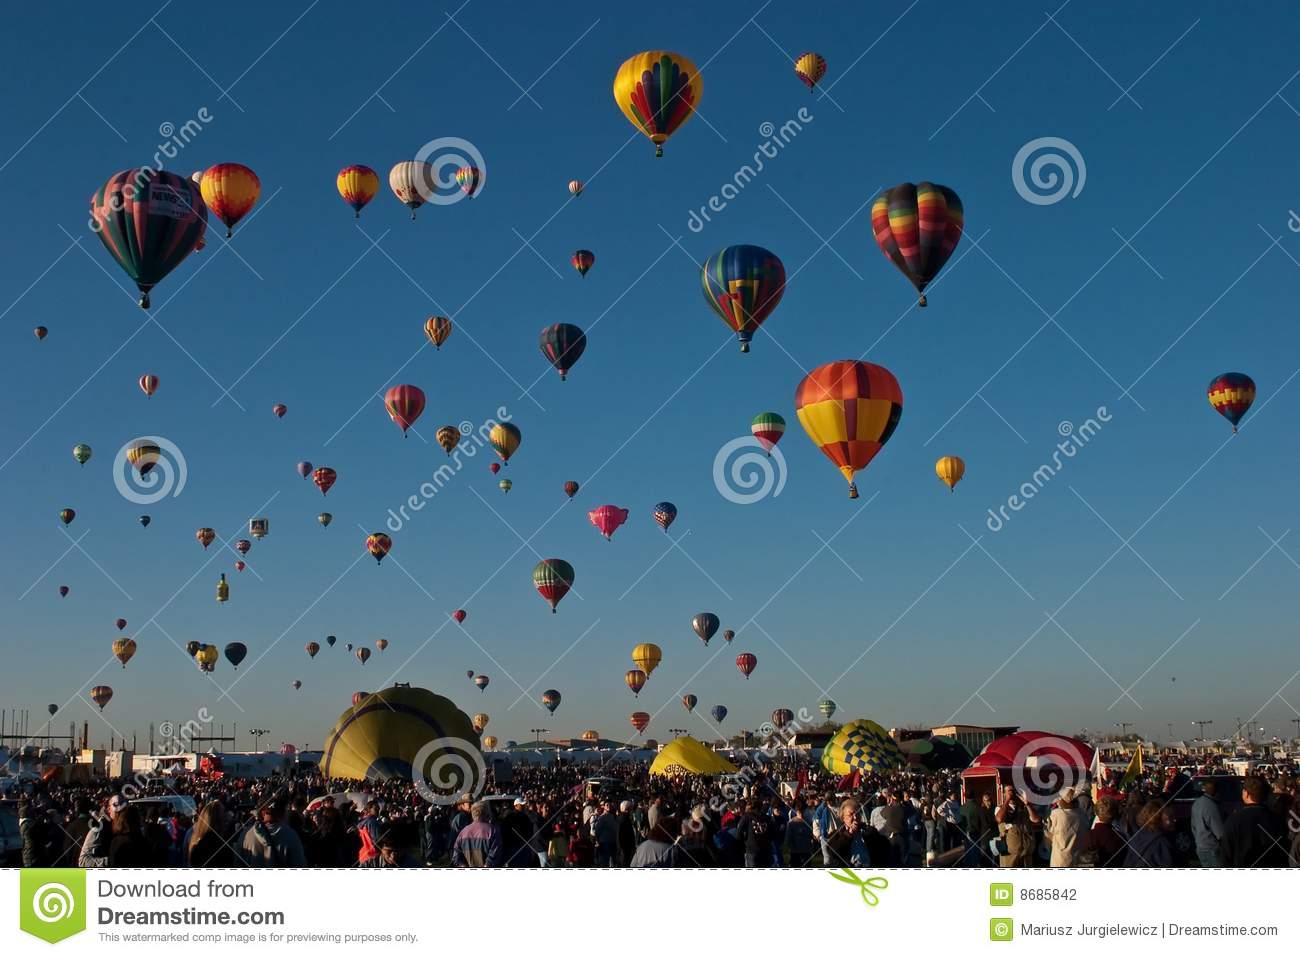 Albuquerque International Balloon Festival View